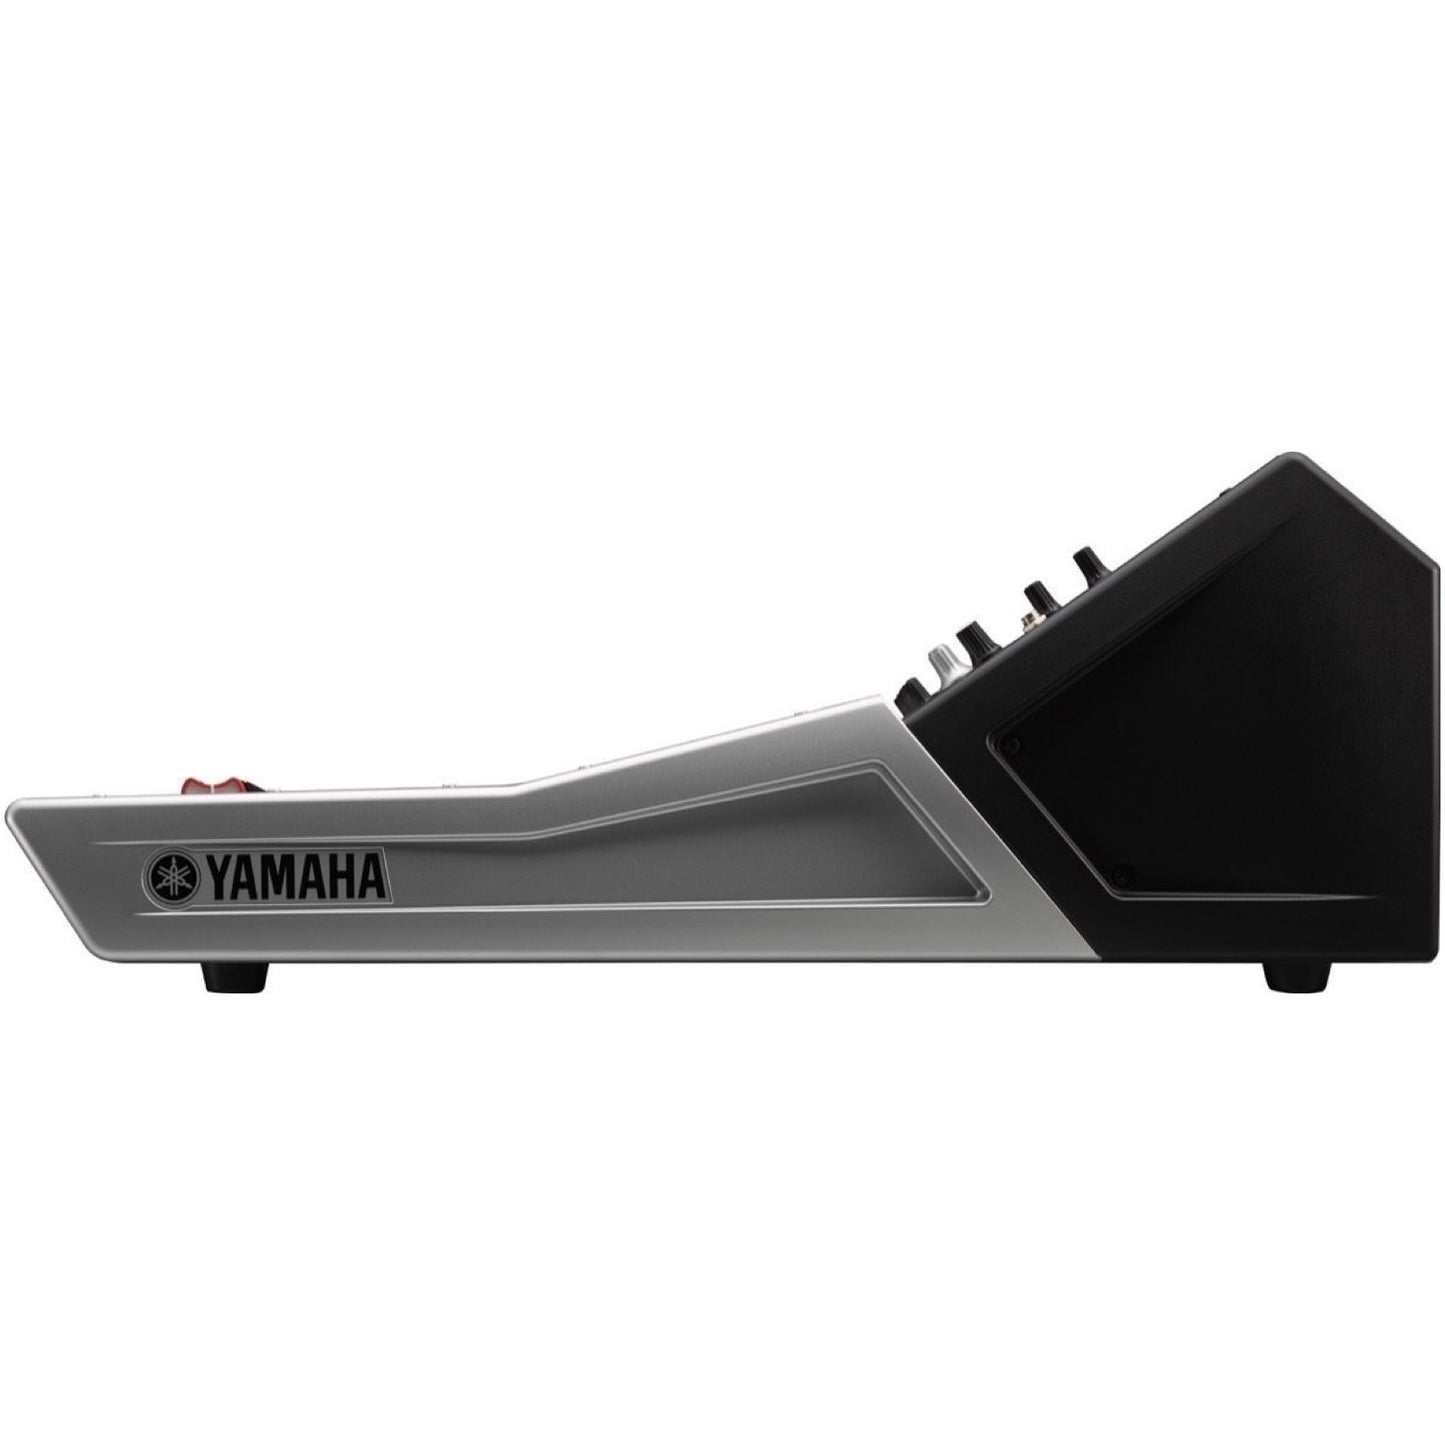 Yamaha TF5 Digital Mixer